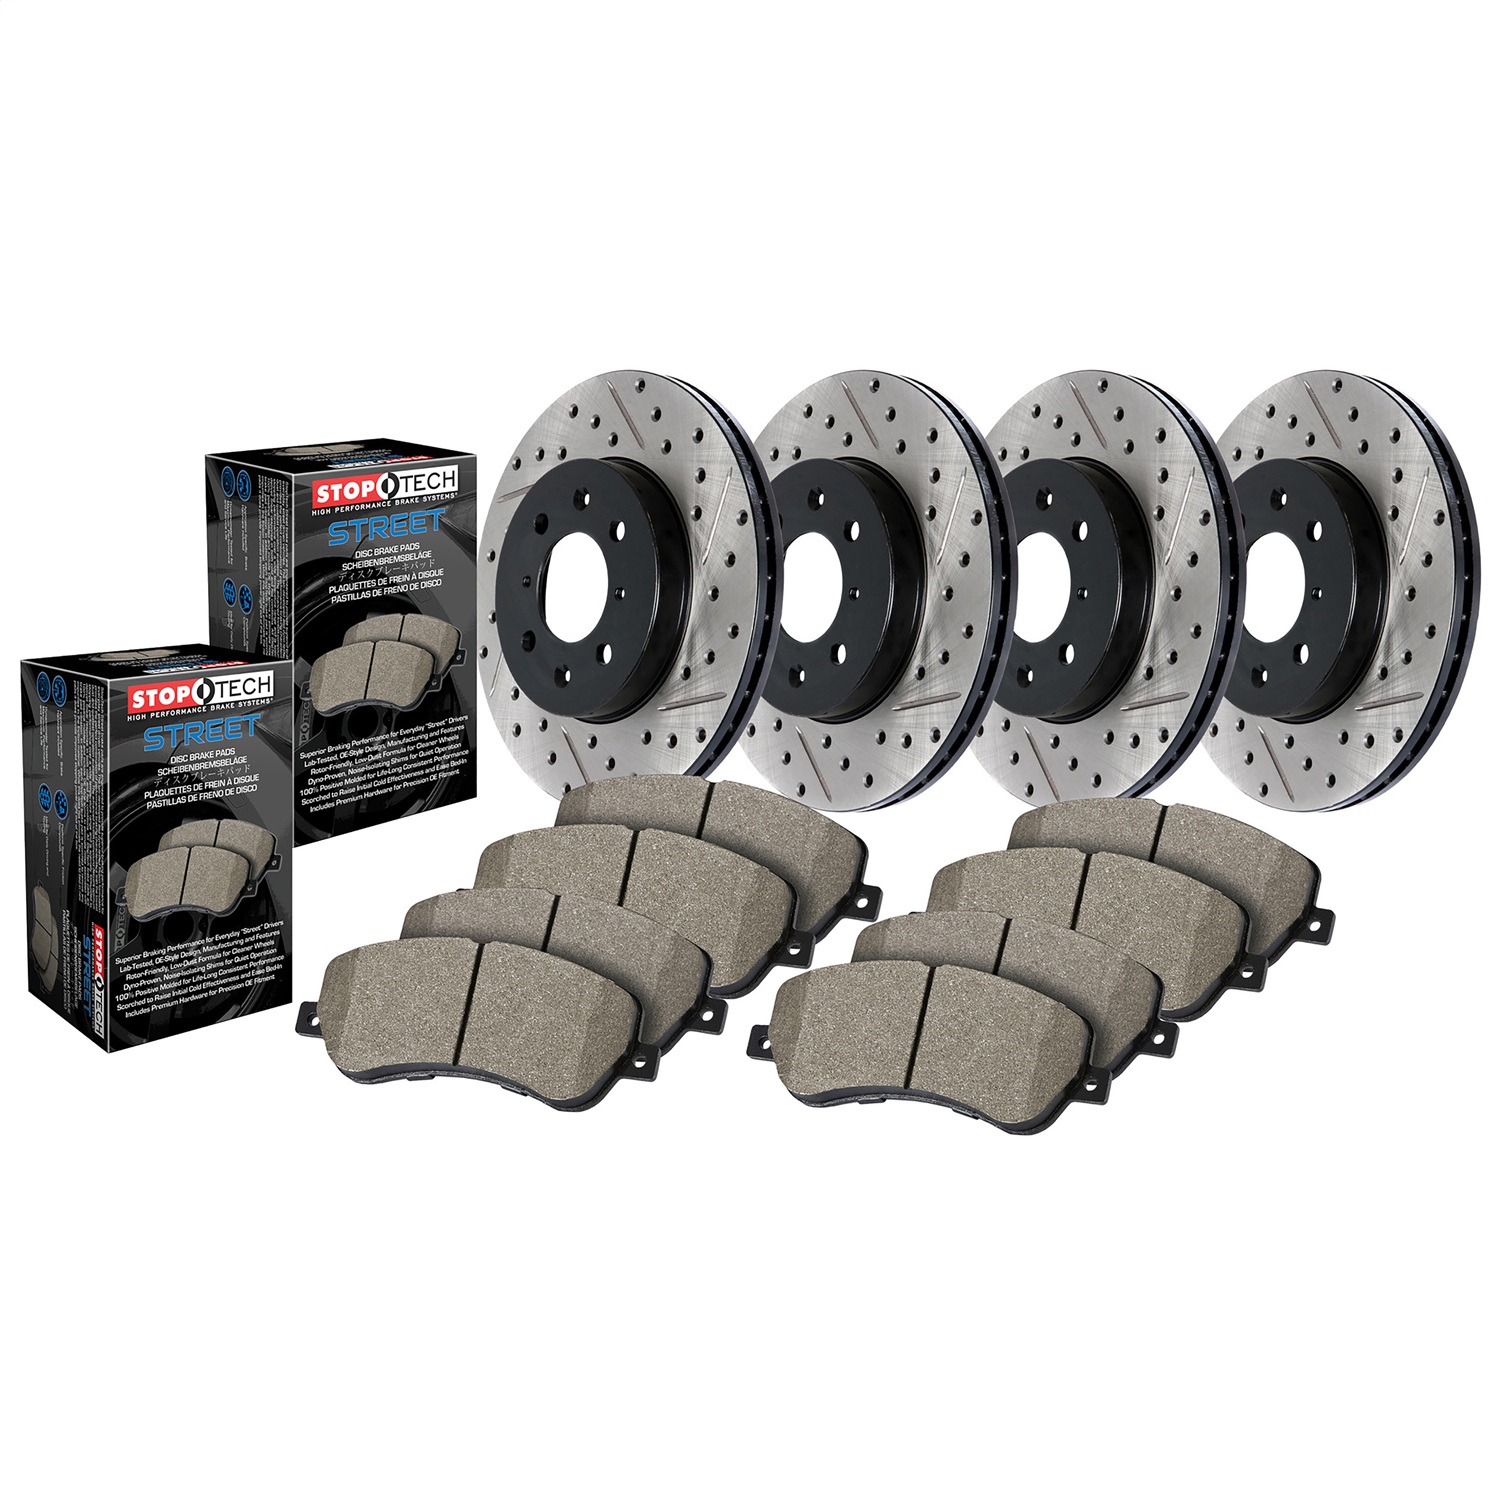 StopTech 935.51011 Disc Brake Upgrade Kit